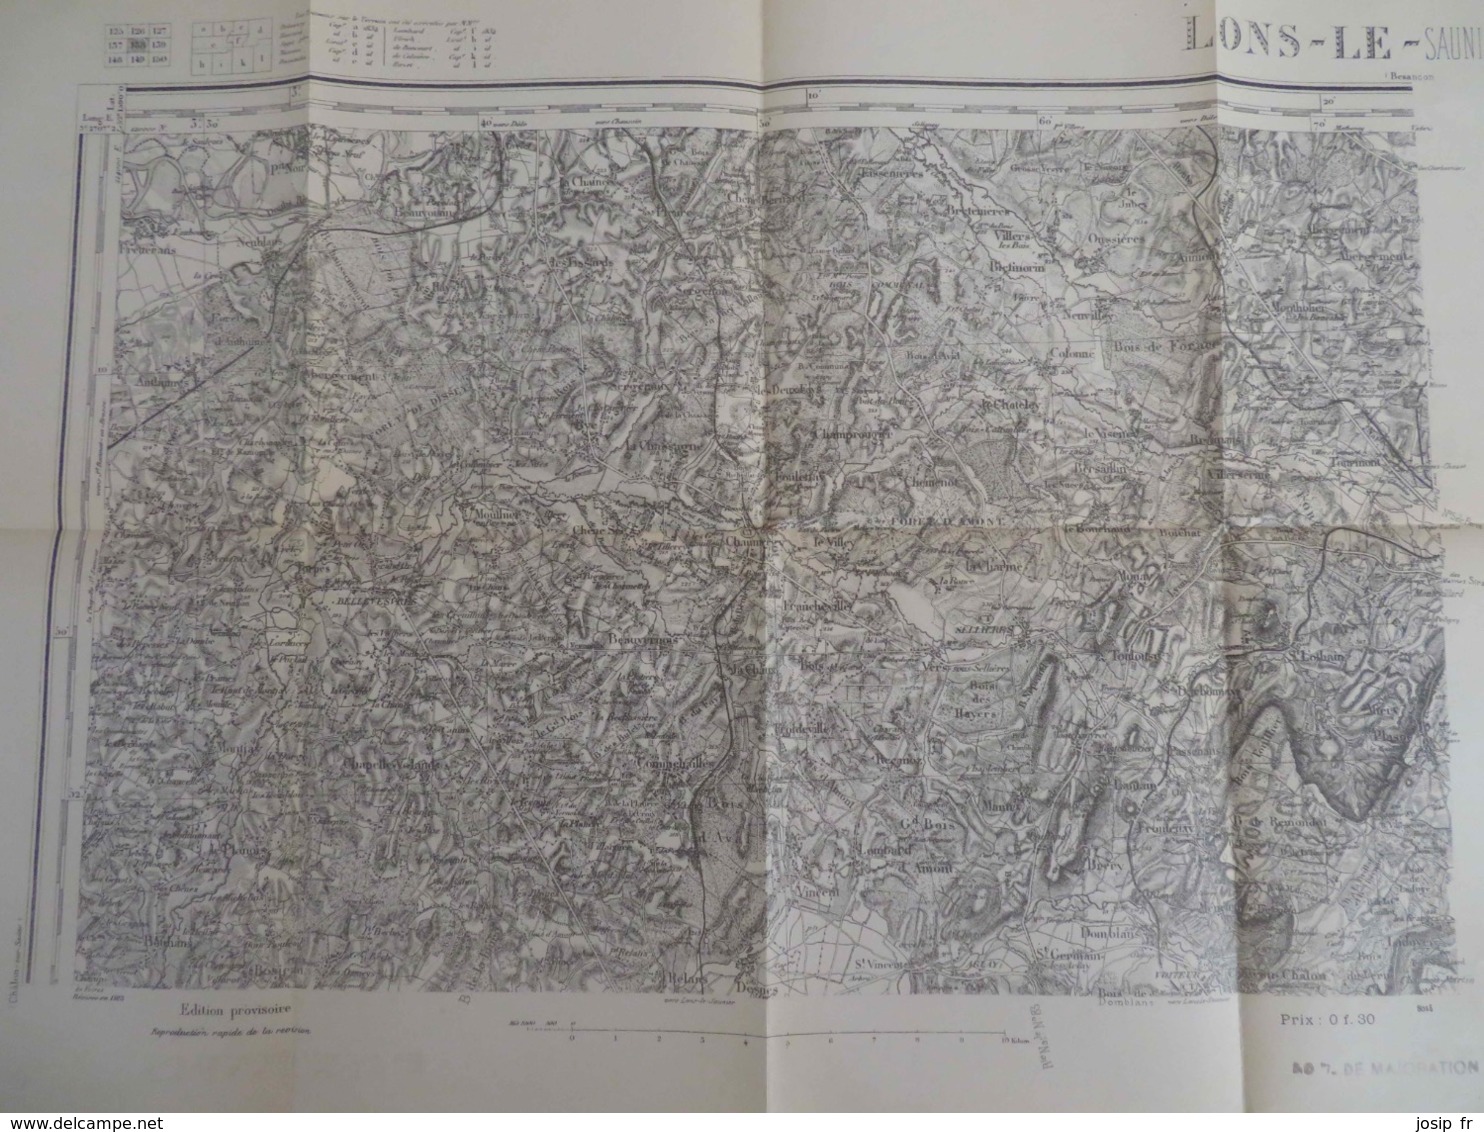 CARTE D'ETAT-MAJOR LONS-LE-SAUNIER NORD-OUEST 1/80000- TYPE 1889 RÉVISÉE 1913- - Topographical Maps